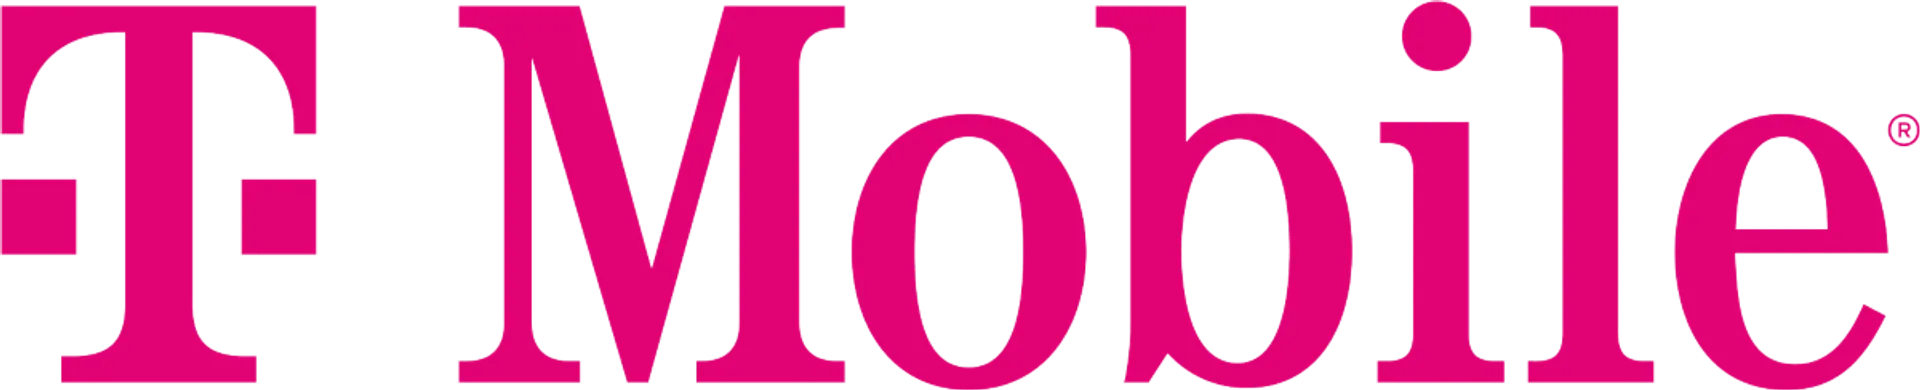 T-MOBILE logo